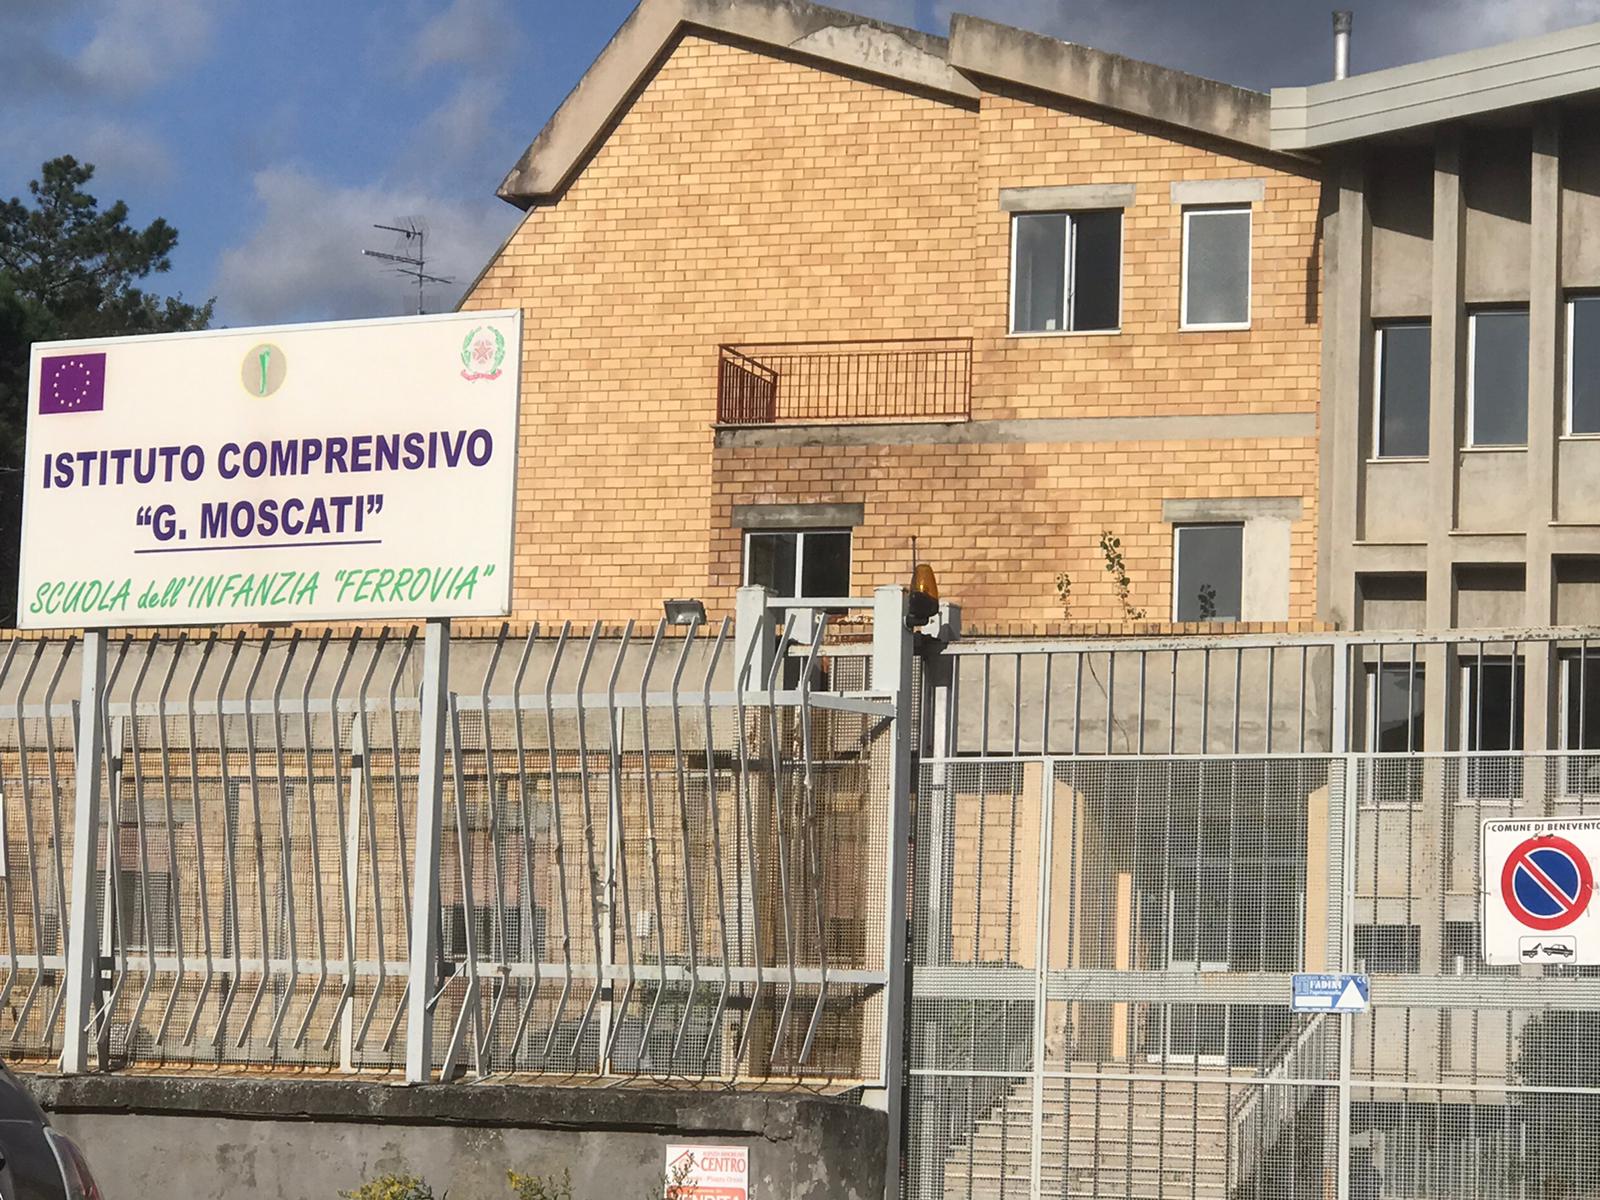 Benevento| Covid-19, nuovo caso nella scuola dell’infanzia “Ferrovia” dell’I.C. Moscati